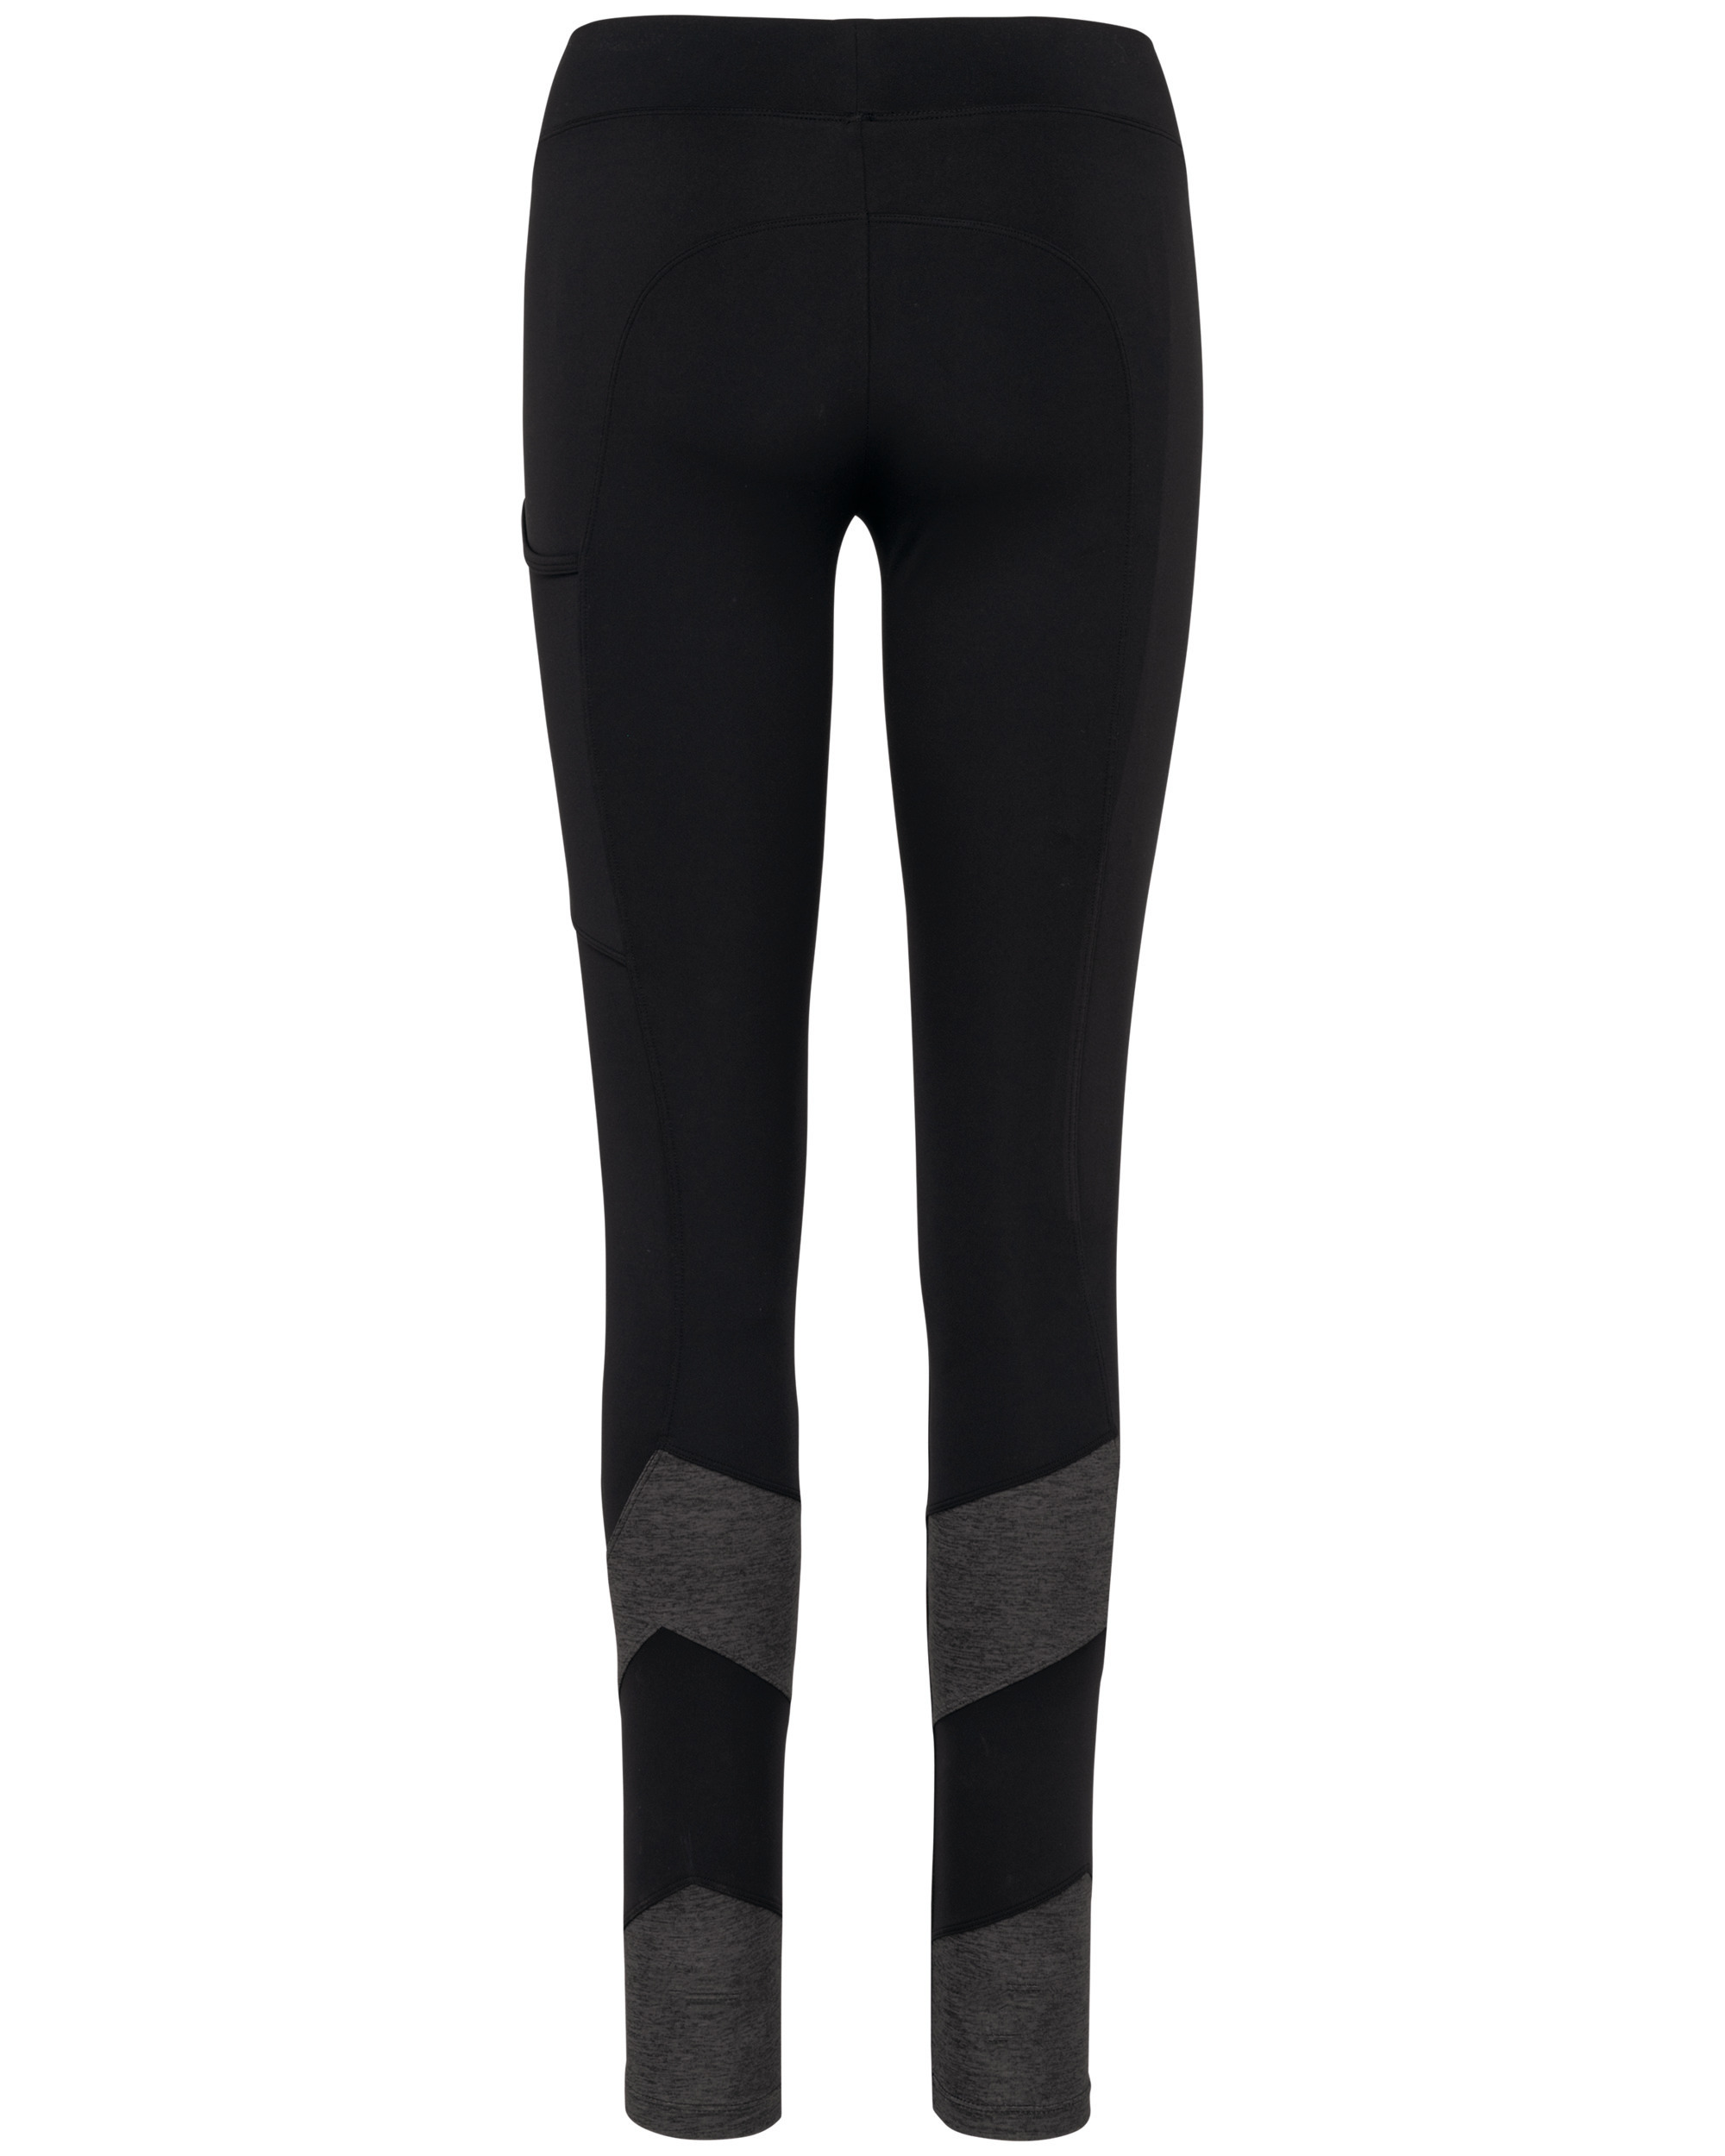 Leggings de cintura alta para mujer, color negro, con diseño elástico en  los lados